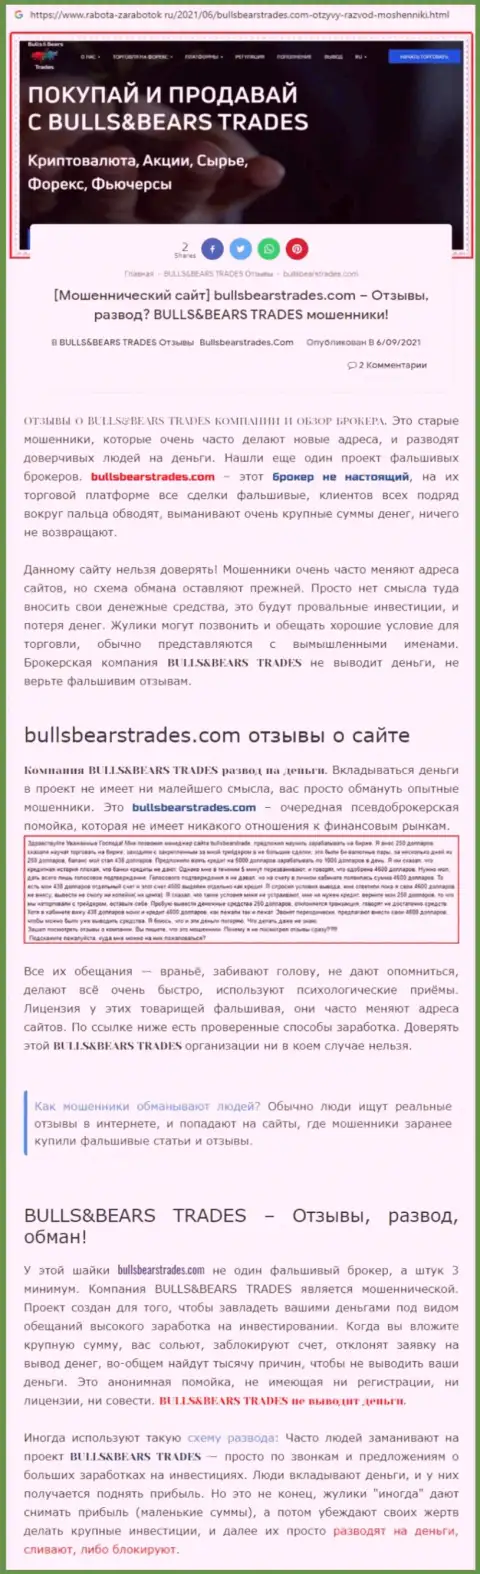 Обзор противозаконно действующей конторы Bulls Bears Trades про то, как накалывает доверчивых клиентов